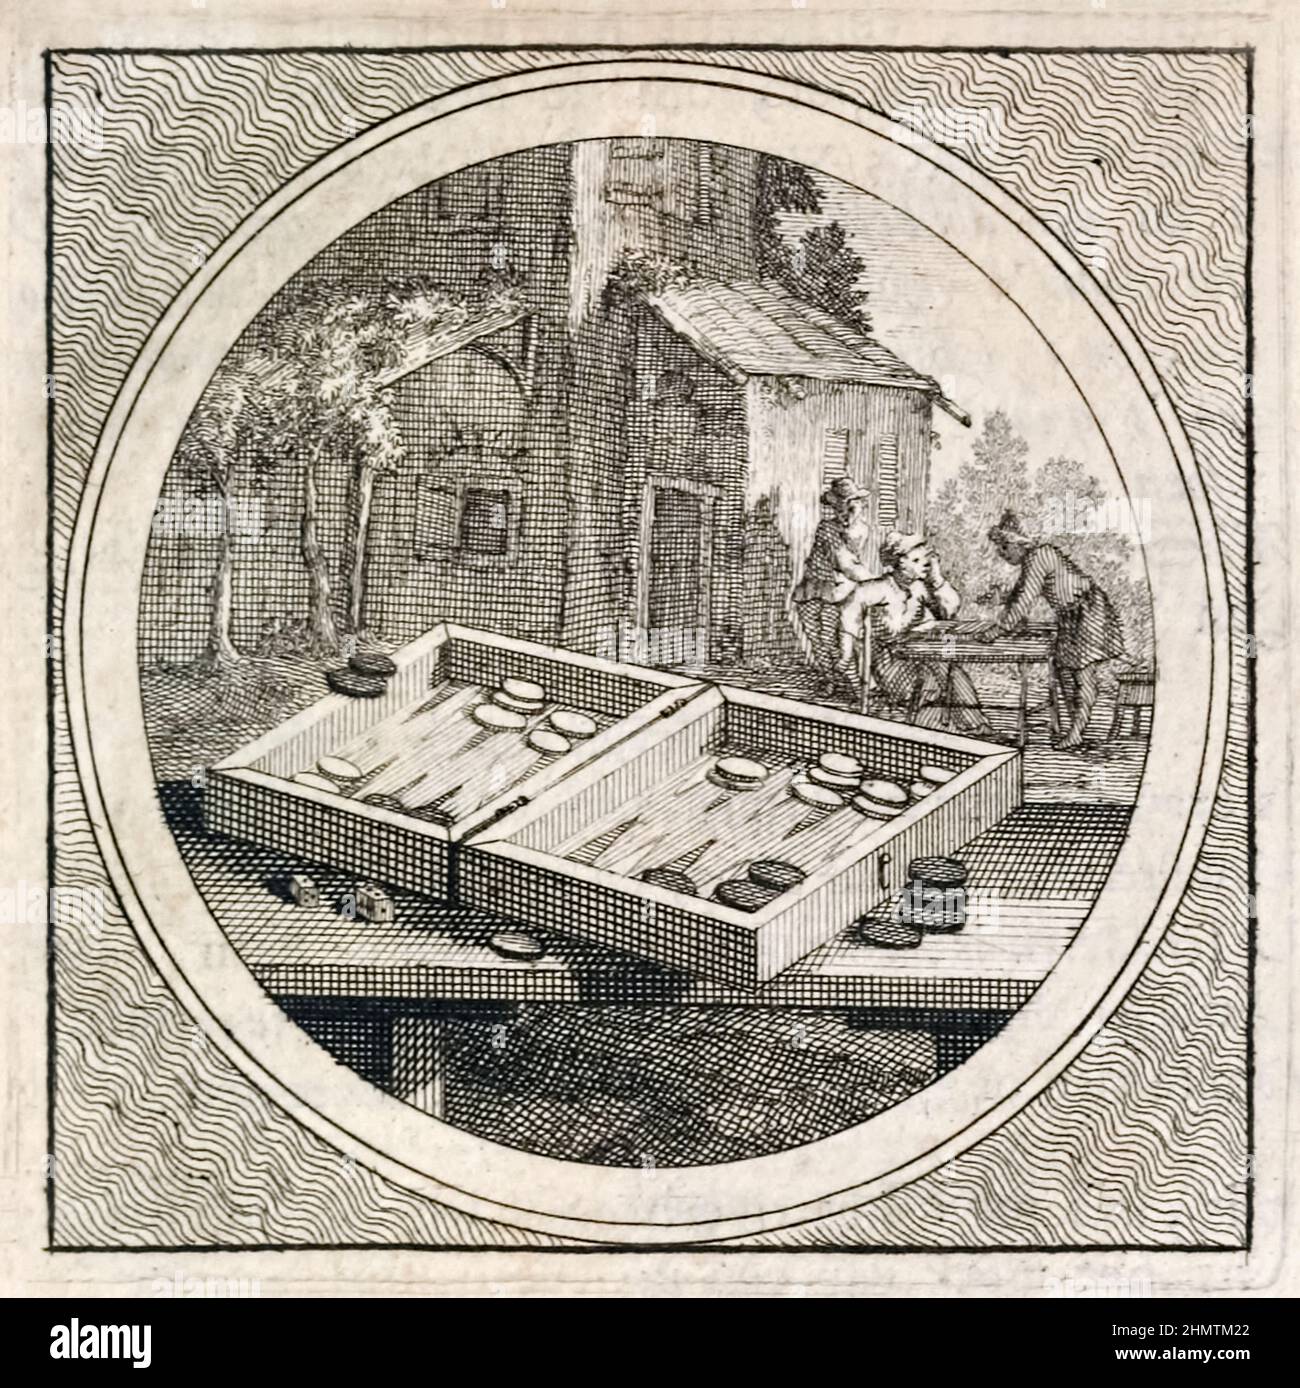 Backgammon Set e giocatori di Stichtelyke Zinnebeelde di Arnold Houbraken (1660-1719). Foto dell'incisione originale pubblicata nel 1723. Foto Stock